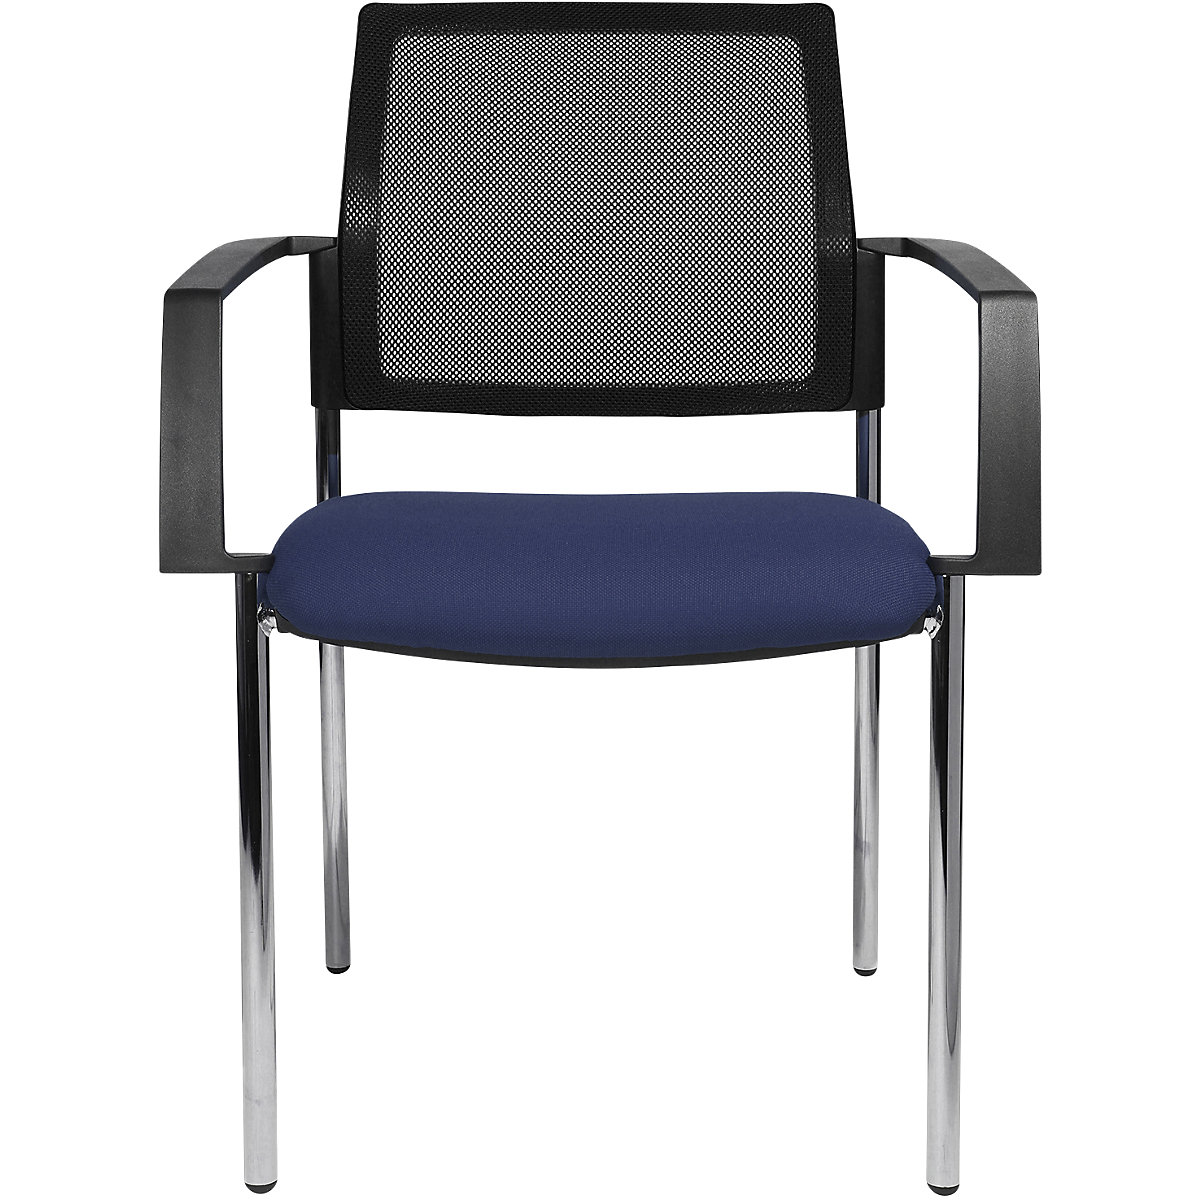 Stohovacia stolička zo sieťoviny – Topstar, so 4 nohami, OJ 2 ks, sedadlo modrá, podstavec chrómový-5